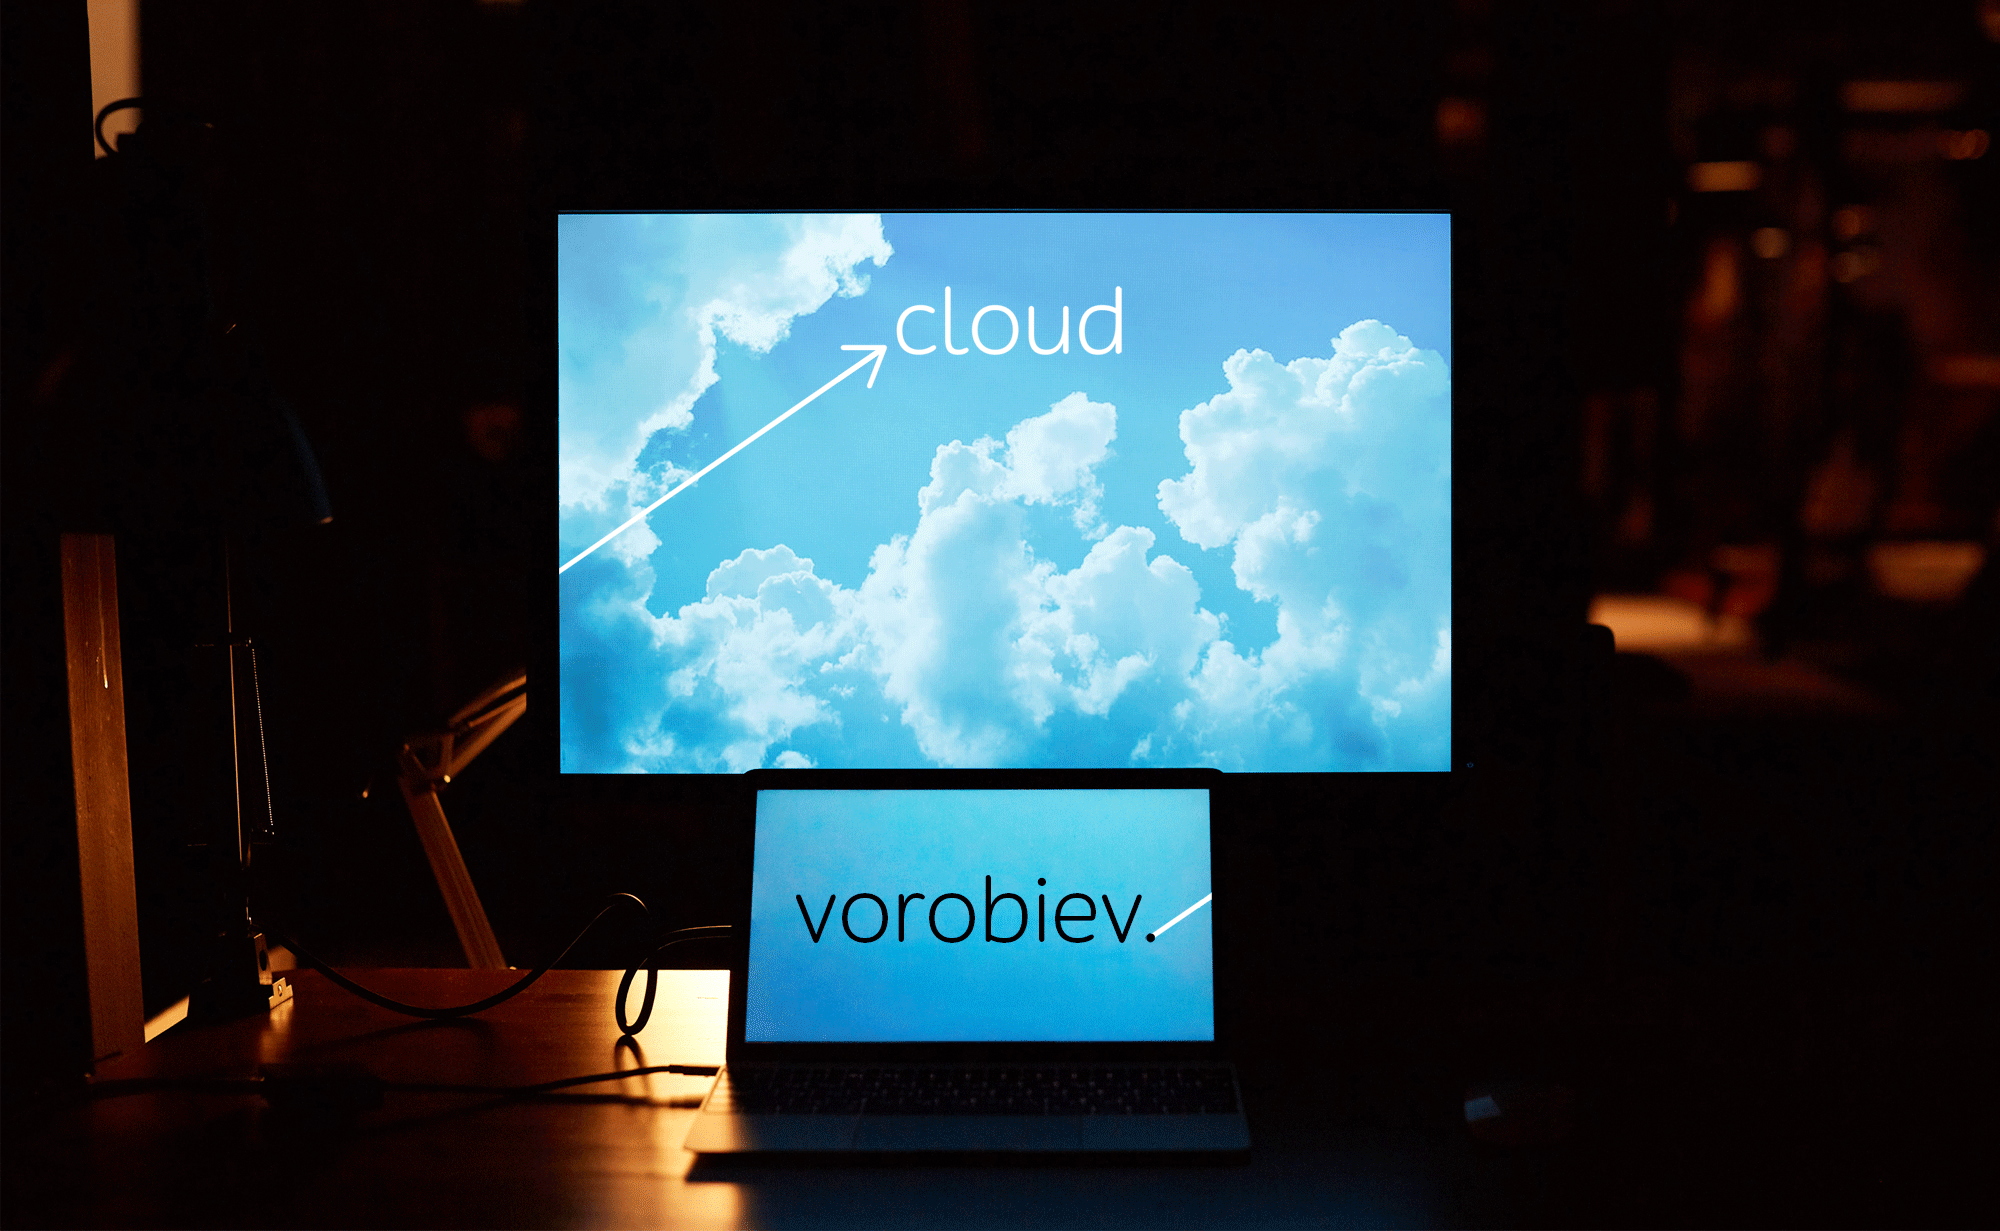 vorobiev cloud screen